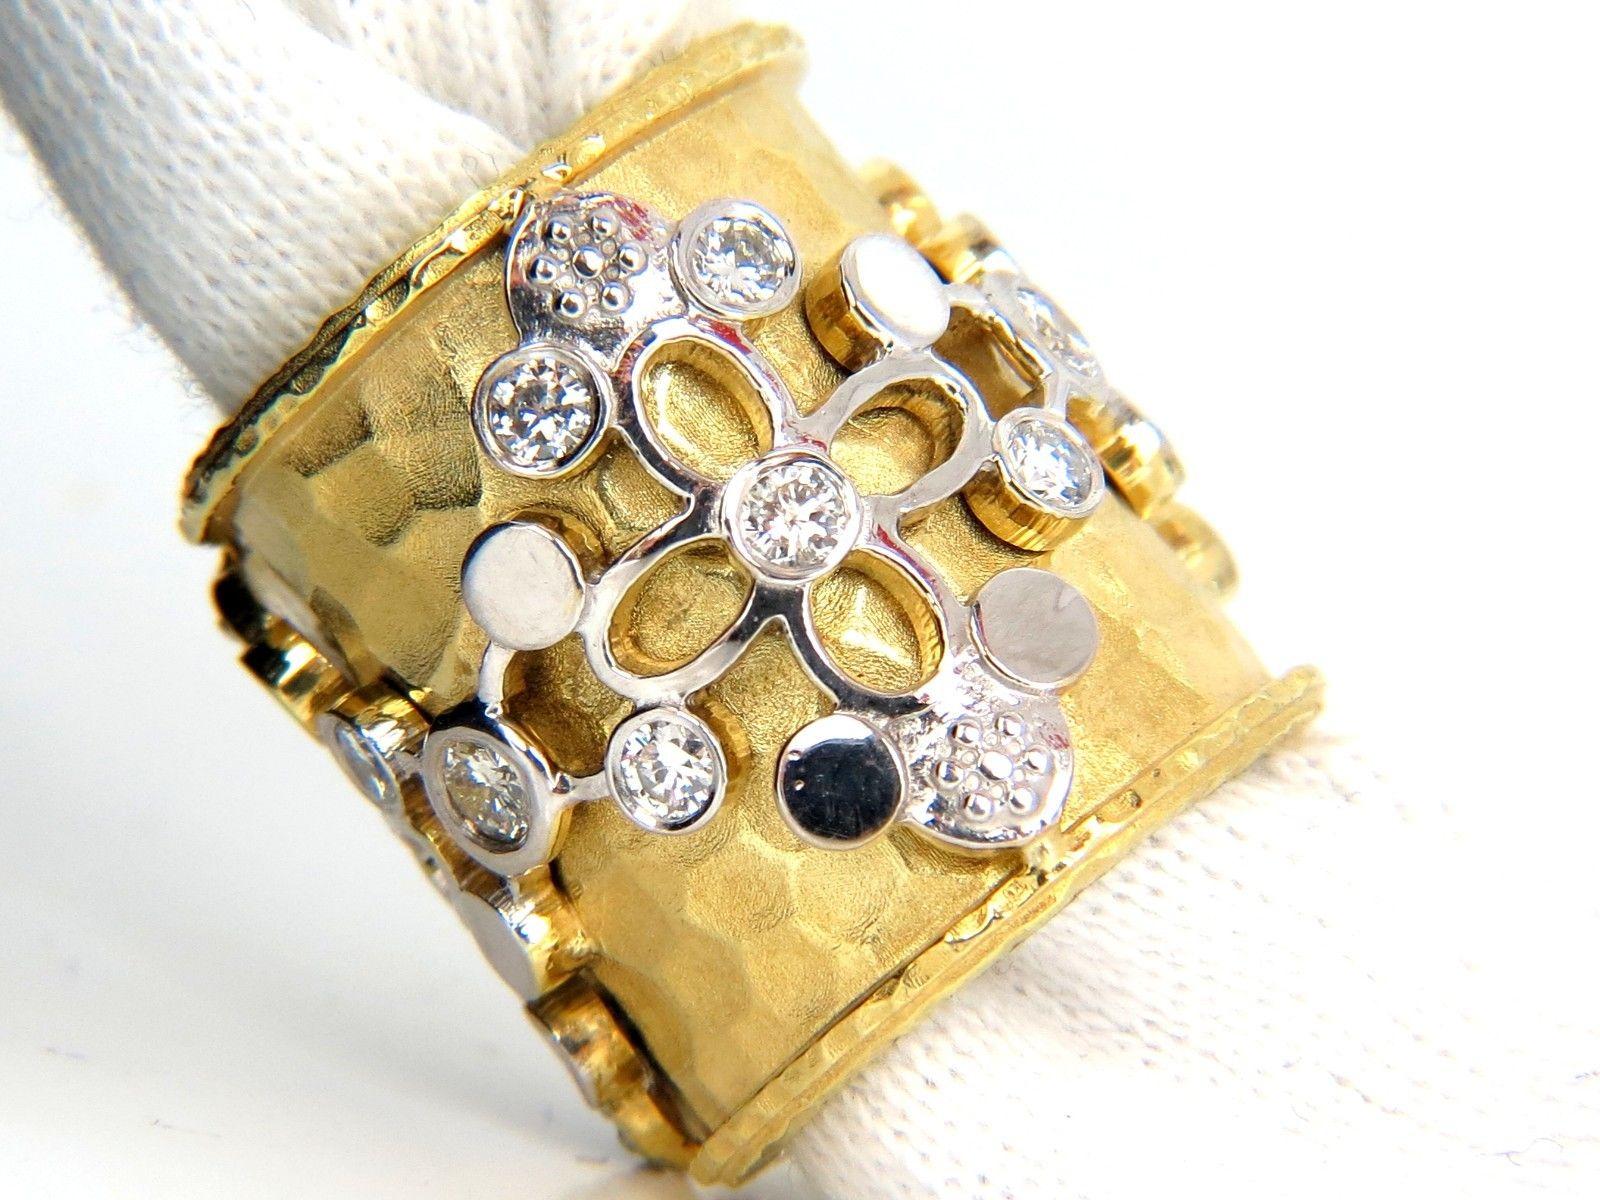 Spanisch gehämmert Deco Gothic Revival Extra Wide Ring

1.10ct. Natürliche runde Diamanten Ring.

Handwerkskunst in Reinkultur.

Gehämmerte Deko & Spanische Patina Überlagerung

G-Farbe

Klarheit VS-2.

14kt. Weiß-/Gelbgold 

23 Gramm

Gesamtring: